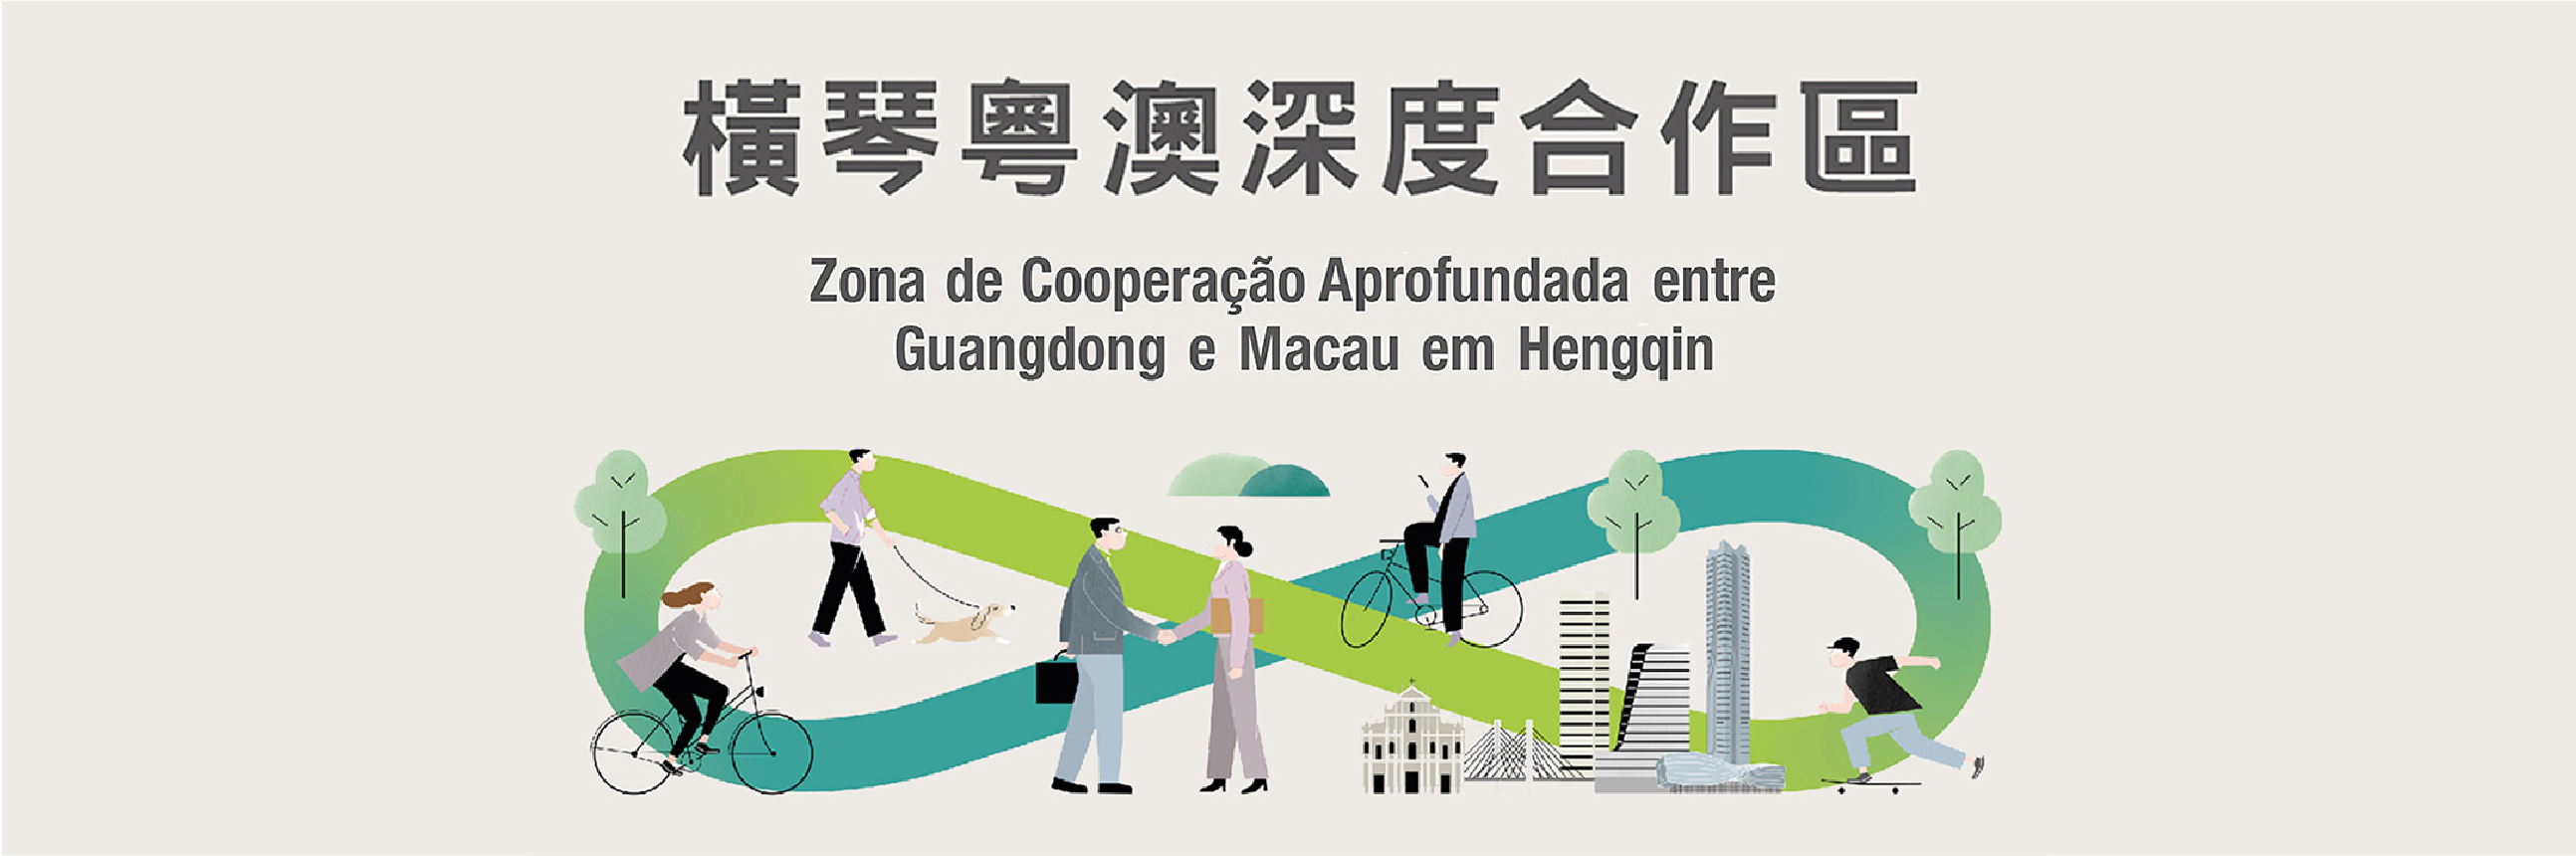 Zona de Cooperação Aprofundada entre Guangdong e Macau em Hengqin 